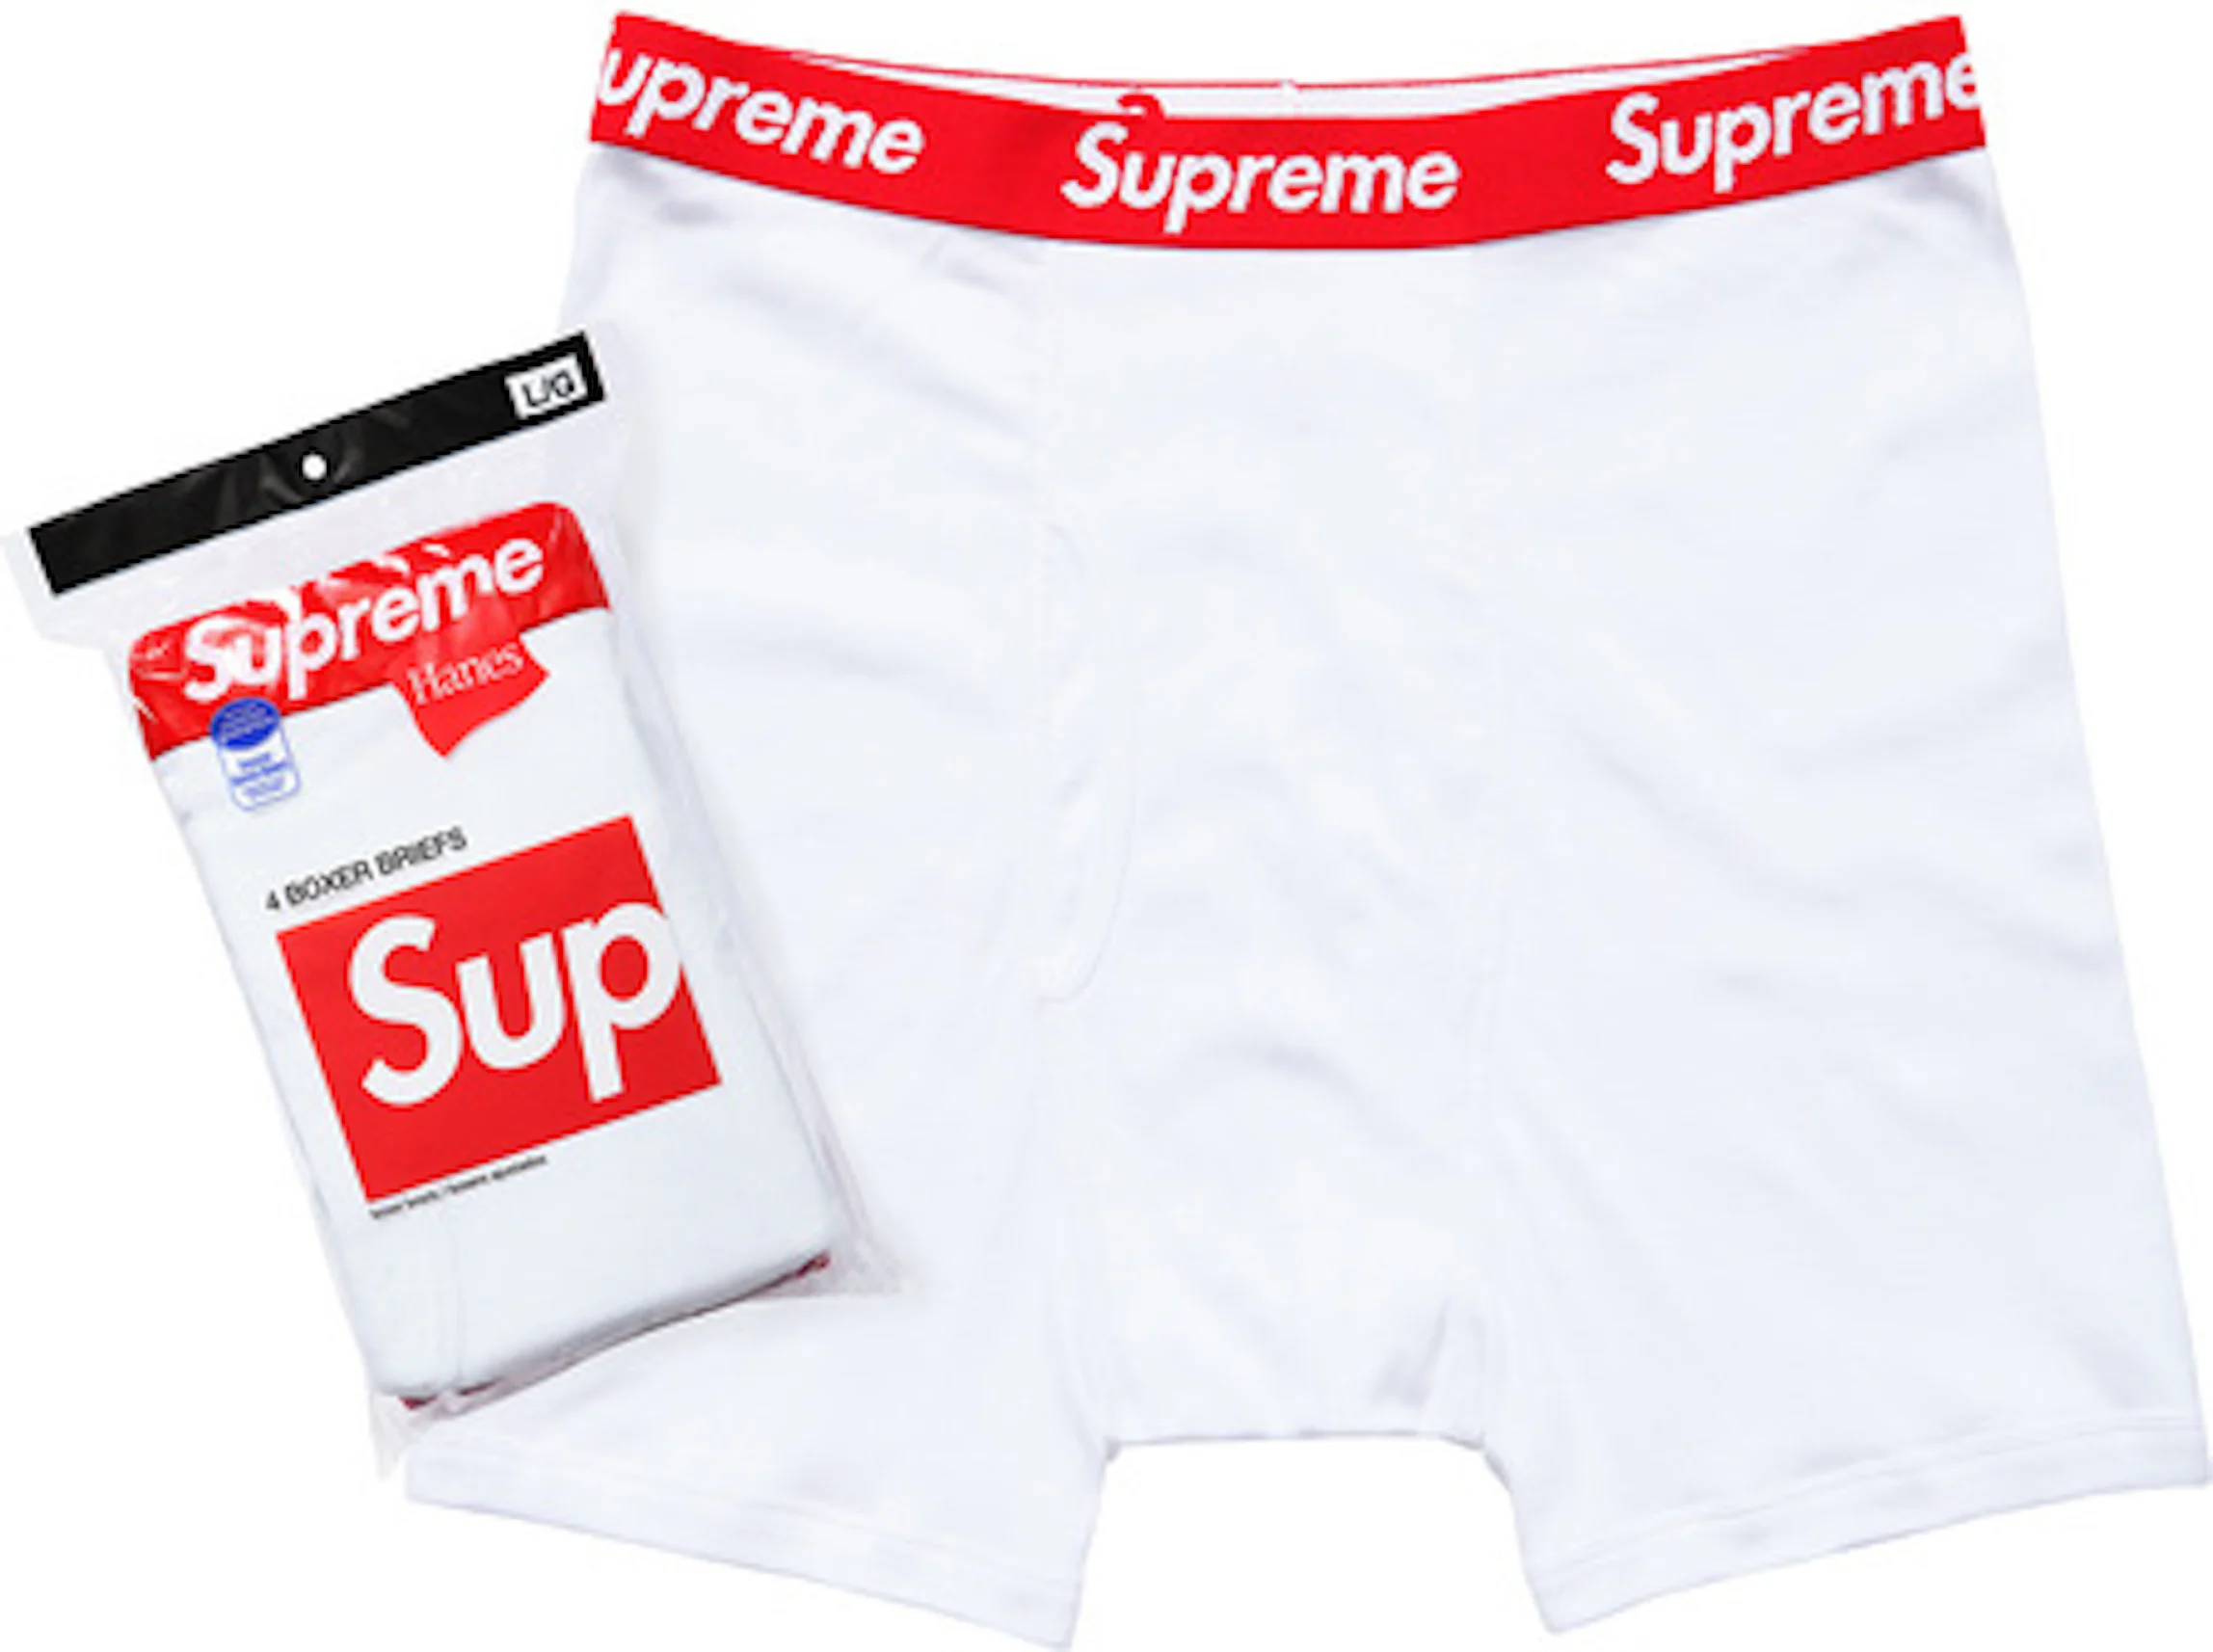 Shop Supreme Underwear online